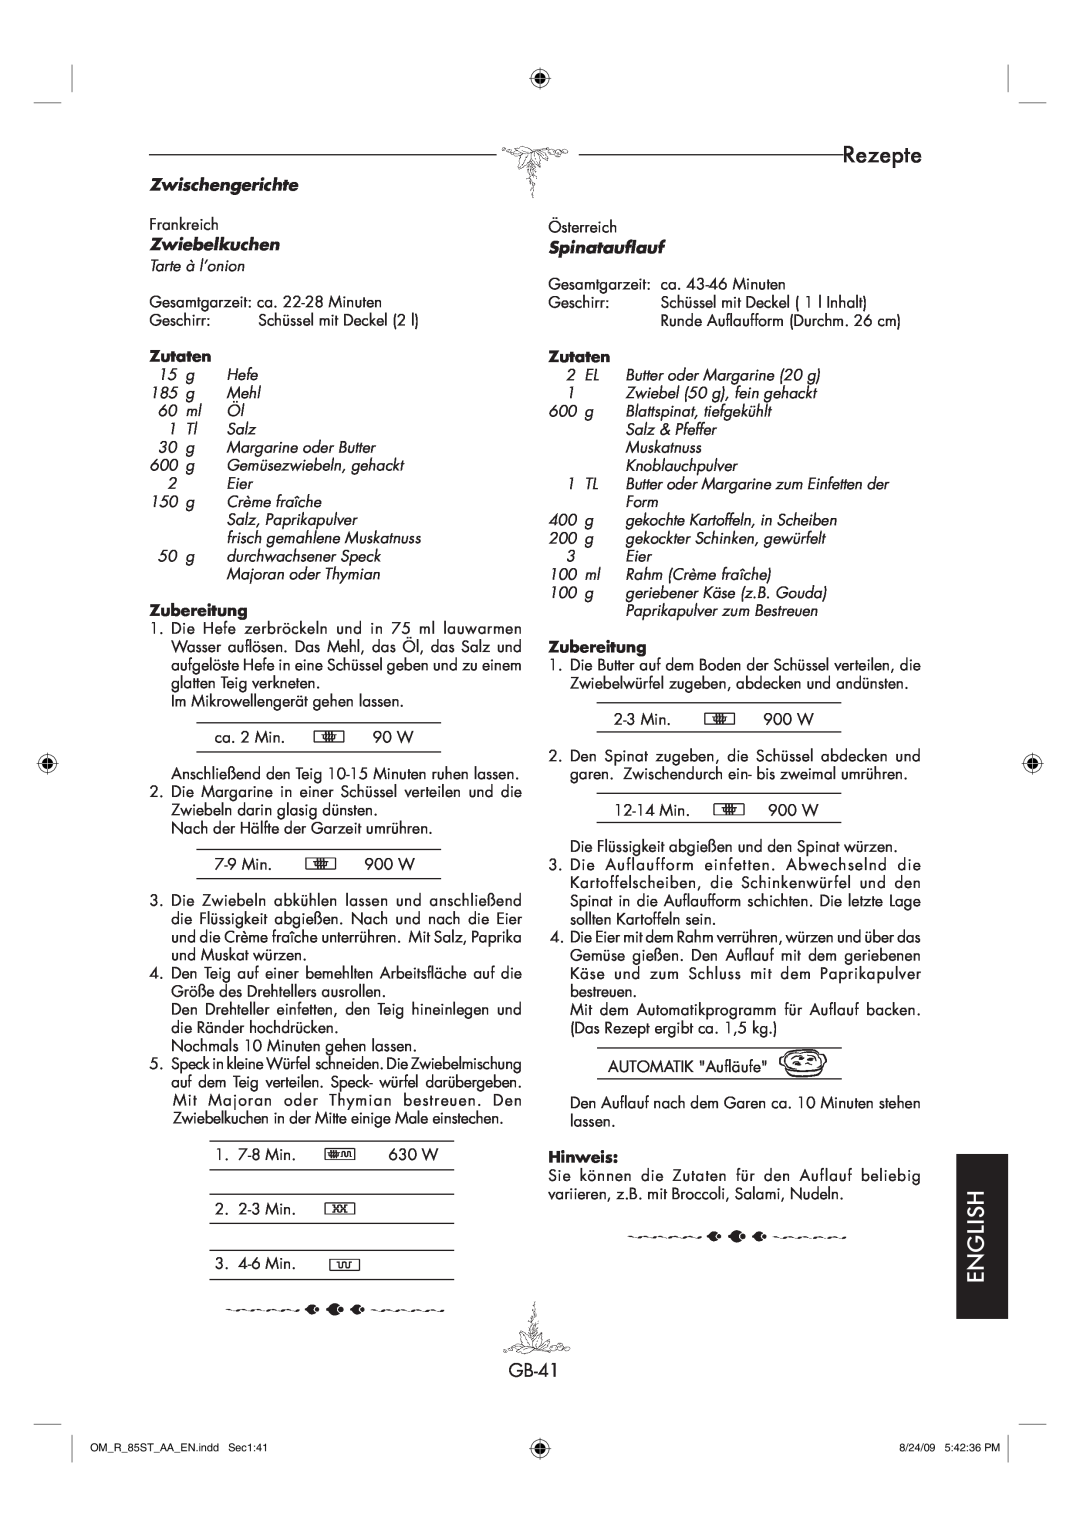 Sharp R-85ST-AA operation manual Rezepte, English, Zwischengerichte, Zwiebelkuchen, Spinatauflauf, Zutaten 